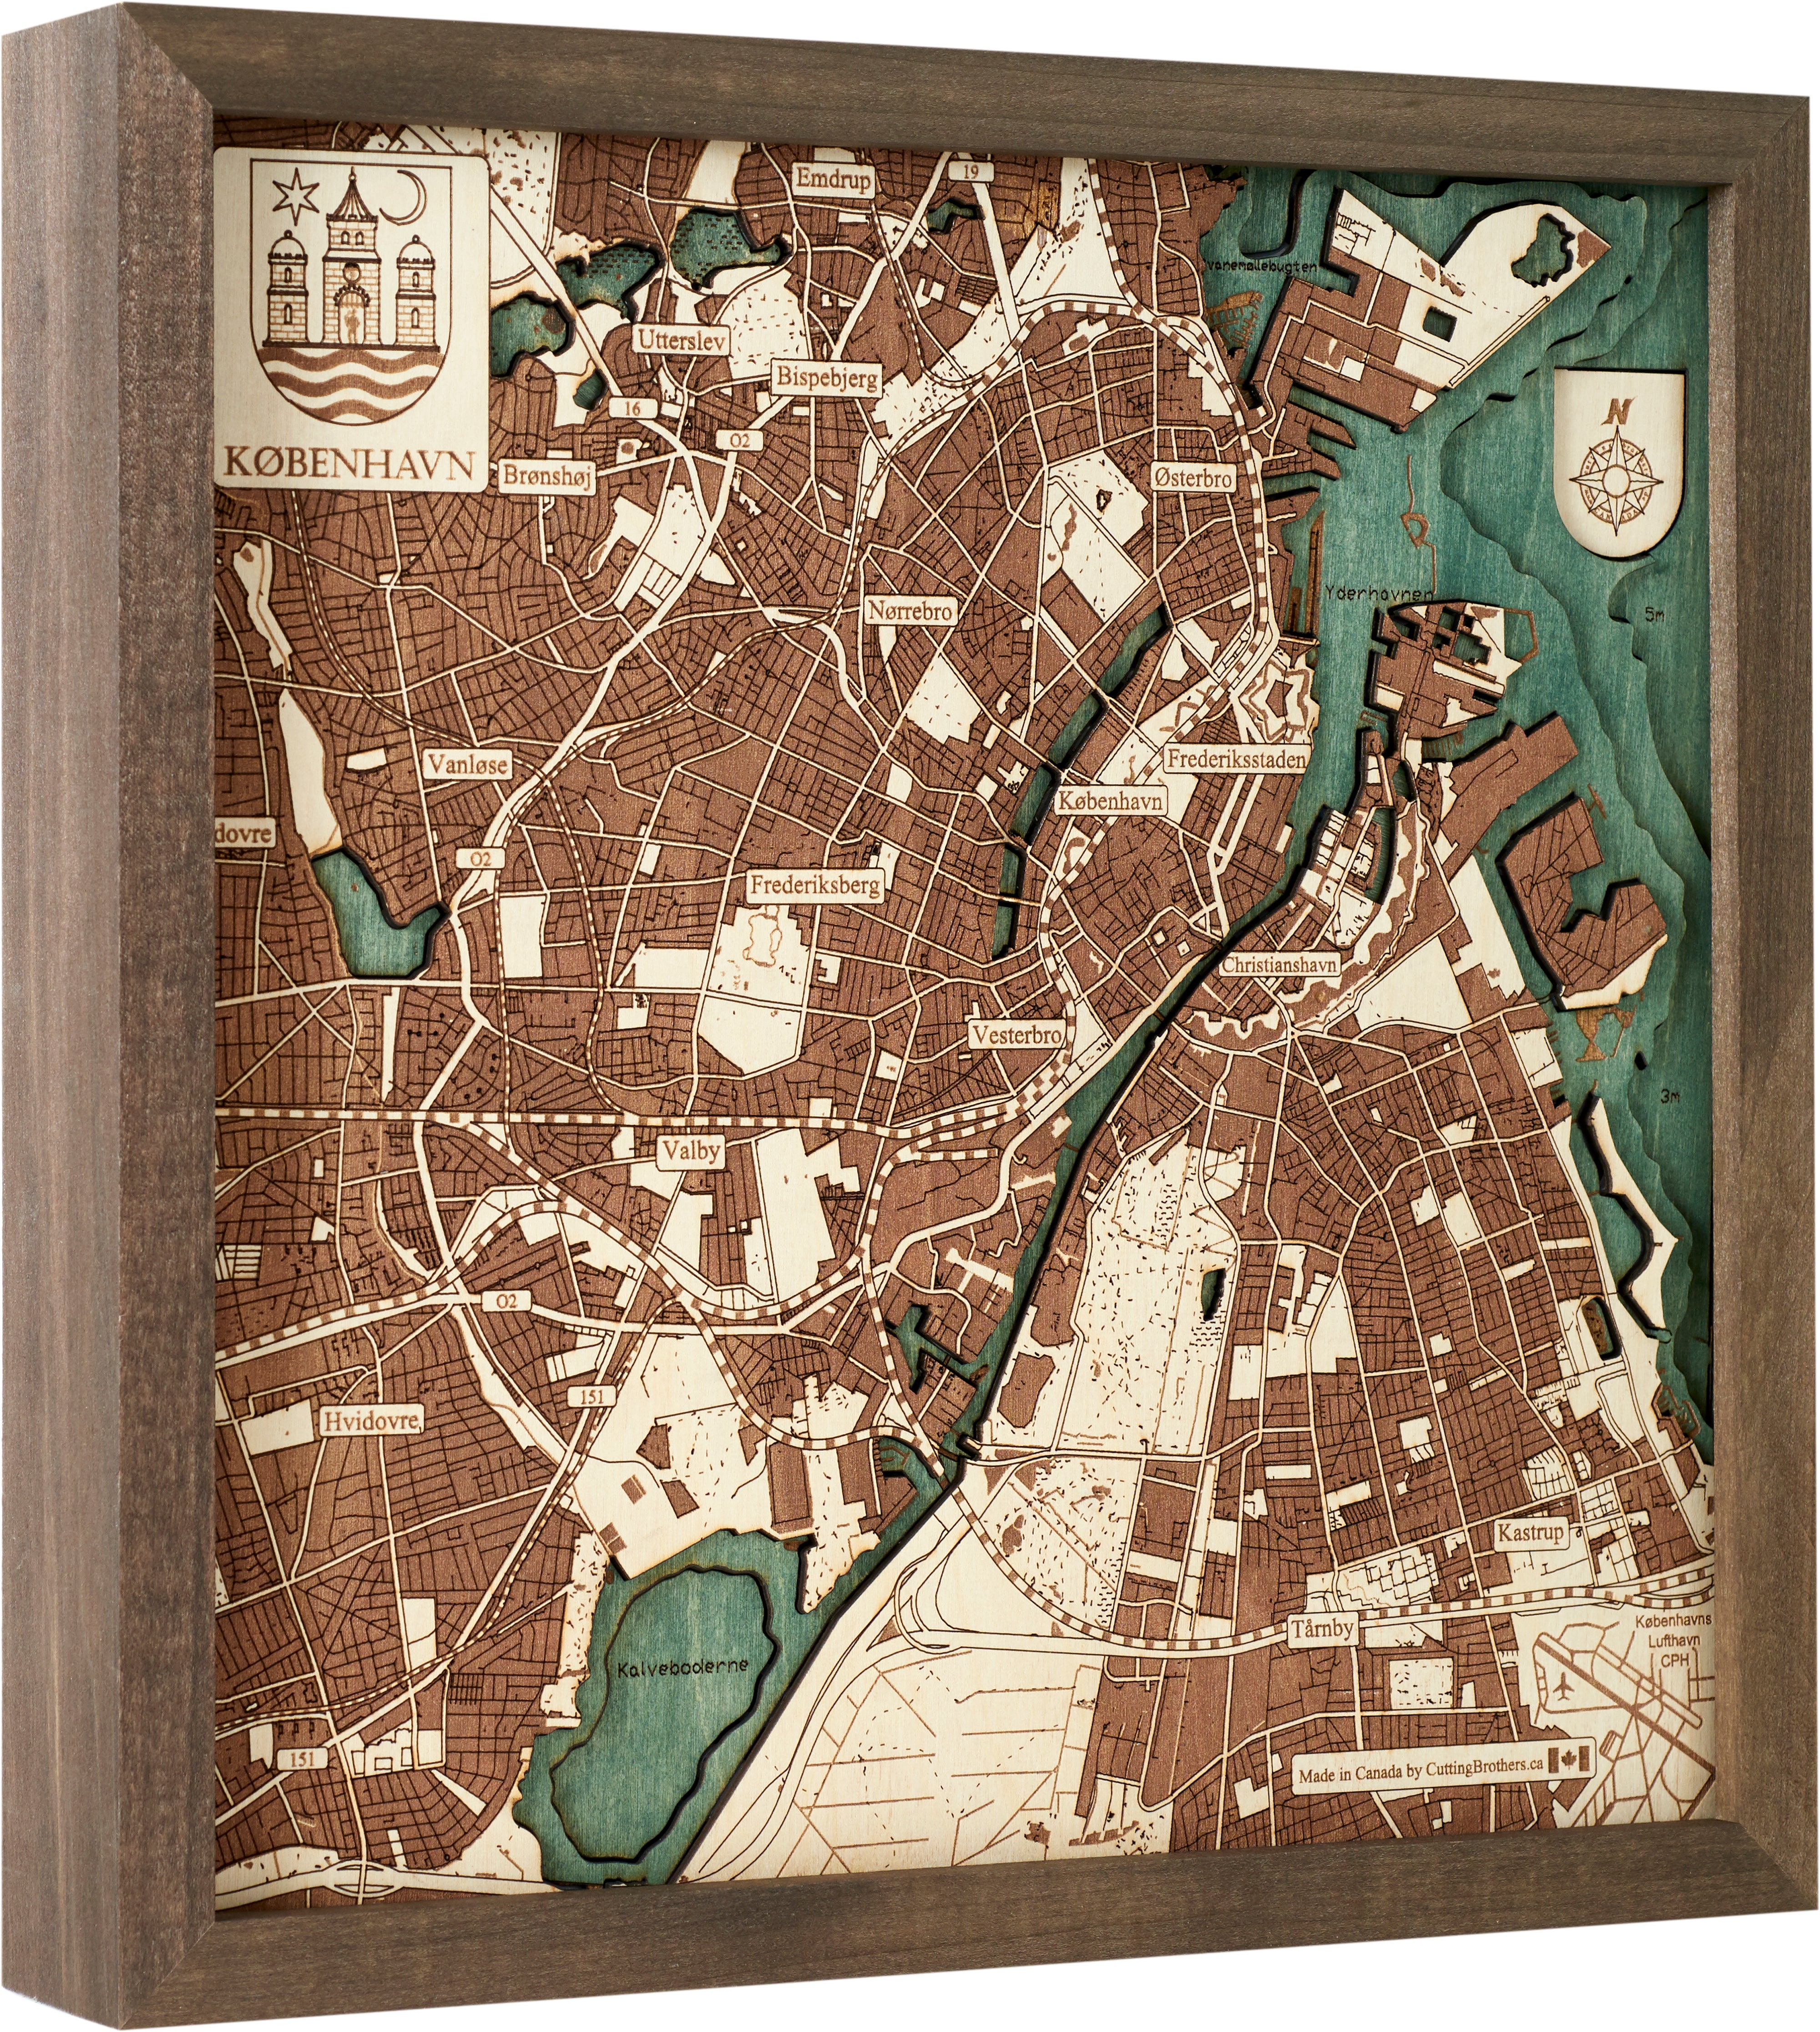 COPENHAGEN 3D Wooden Wall Map - Version S